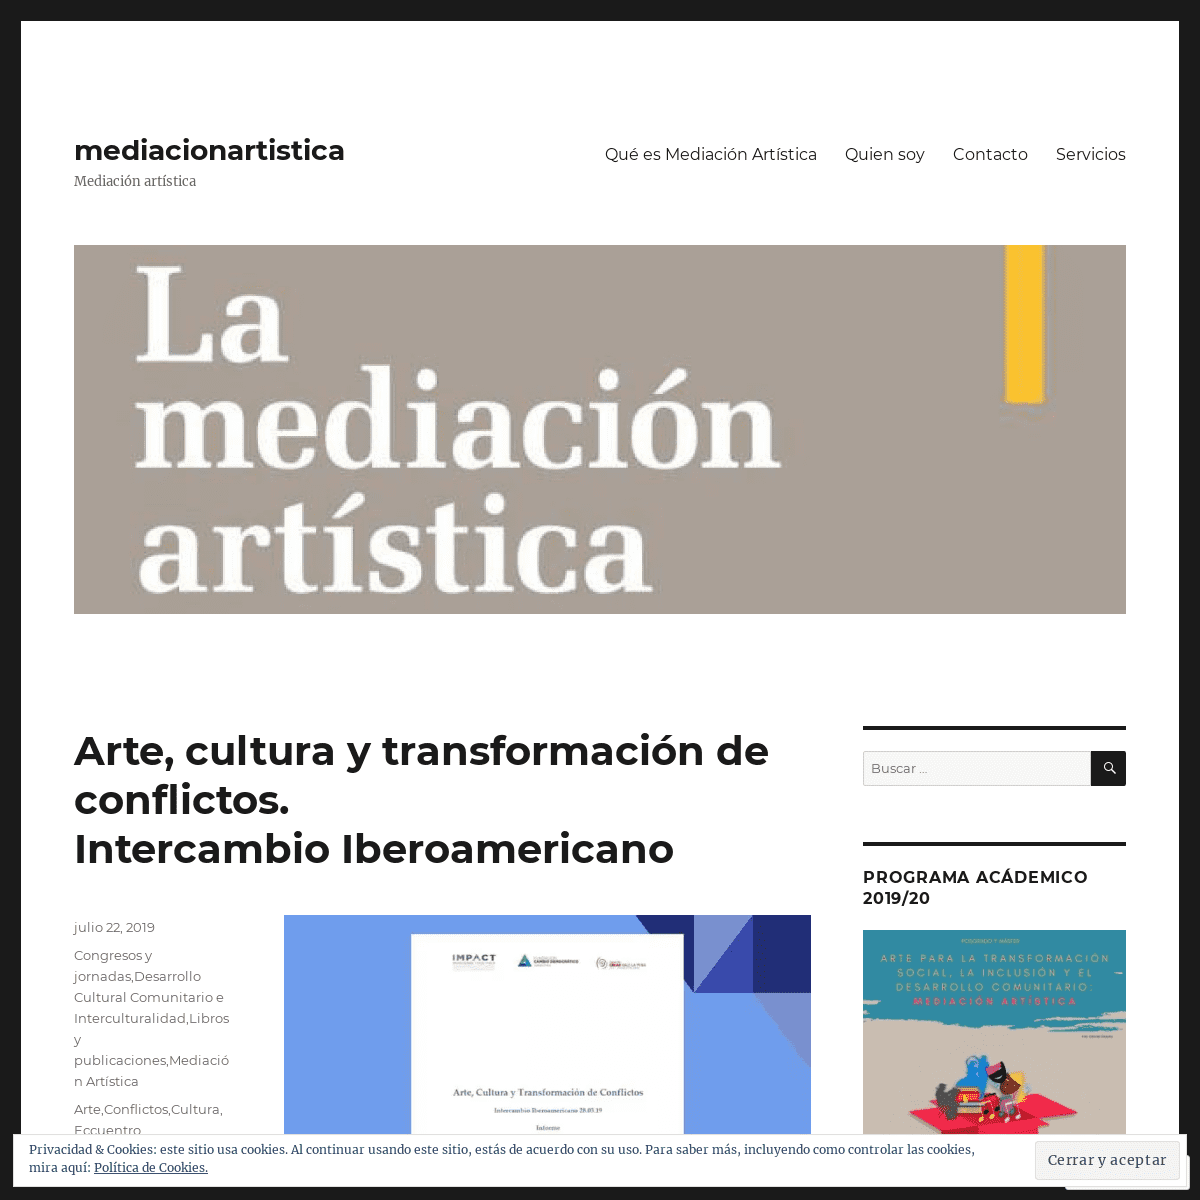 mediacionartistica – Mediación artística